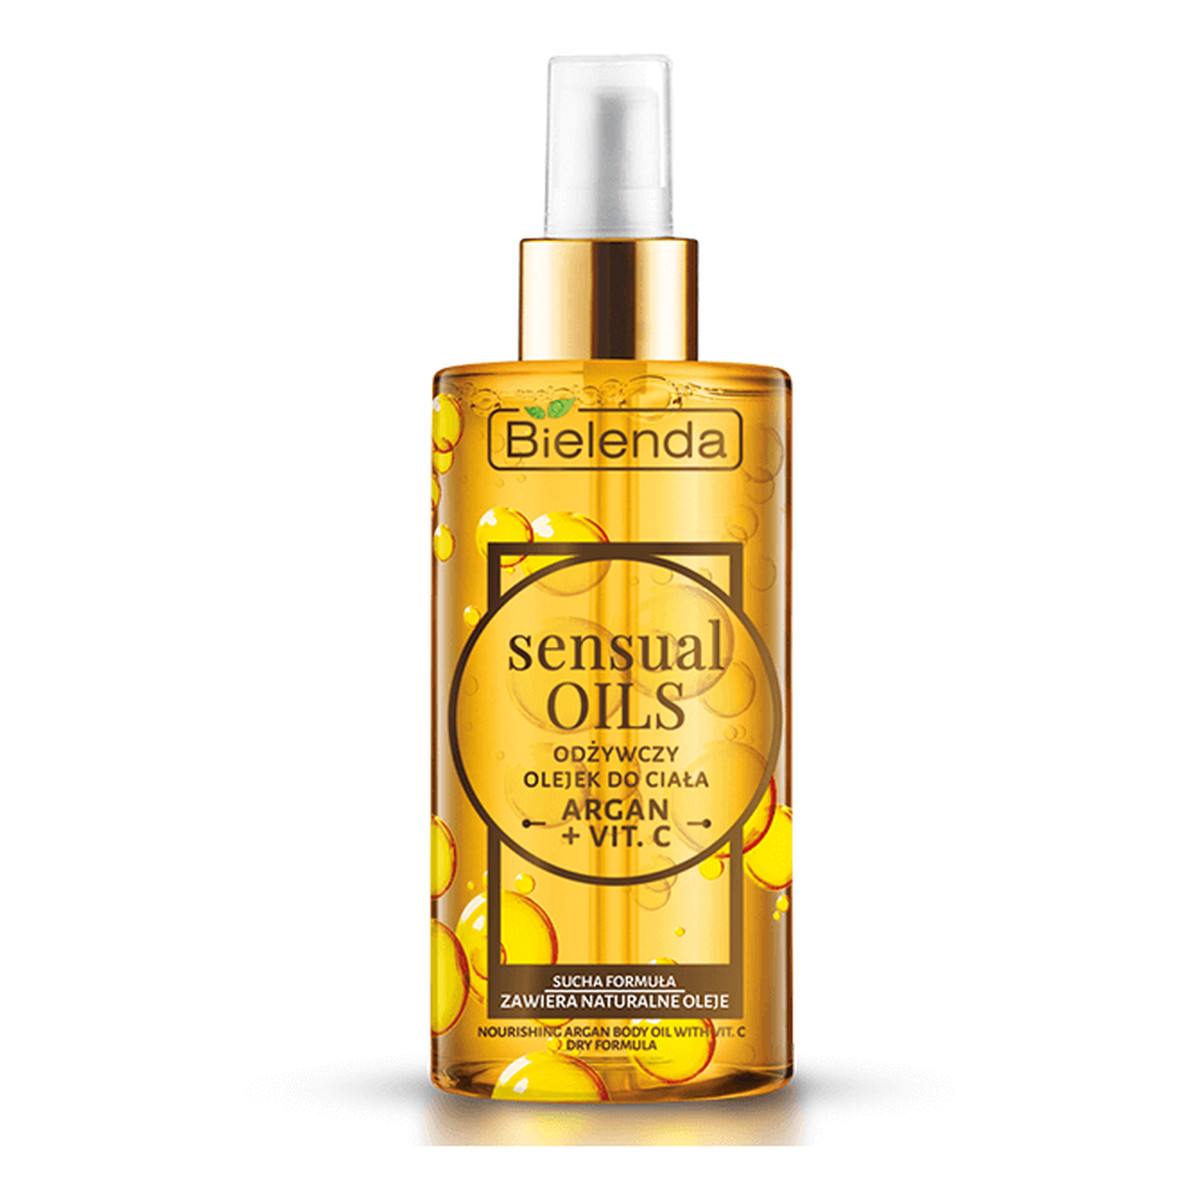 Bielenda Sensual Oils odżywczy olejek do ciała Argan + Witamina C 150ml